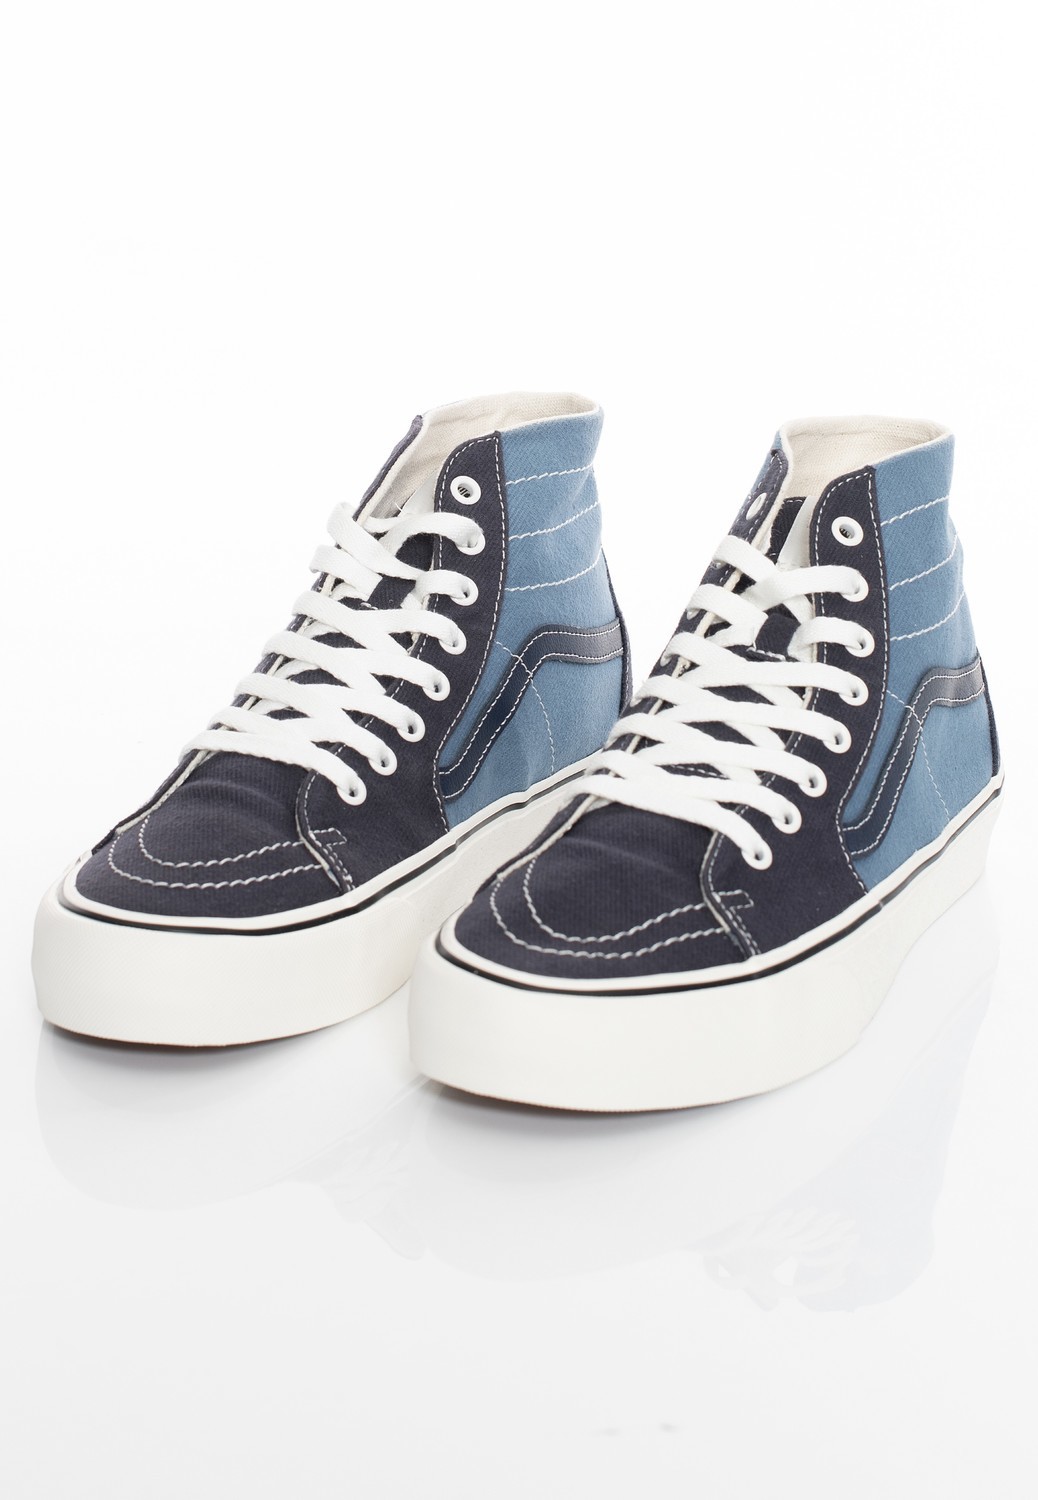 Vans - Sk8-Hi Tapered VR3 Twill Blue Multi - Skate Shoes